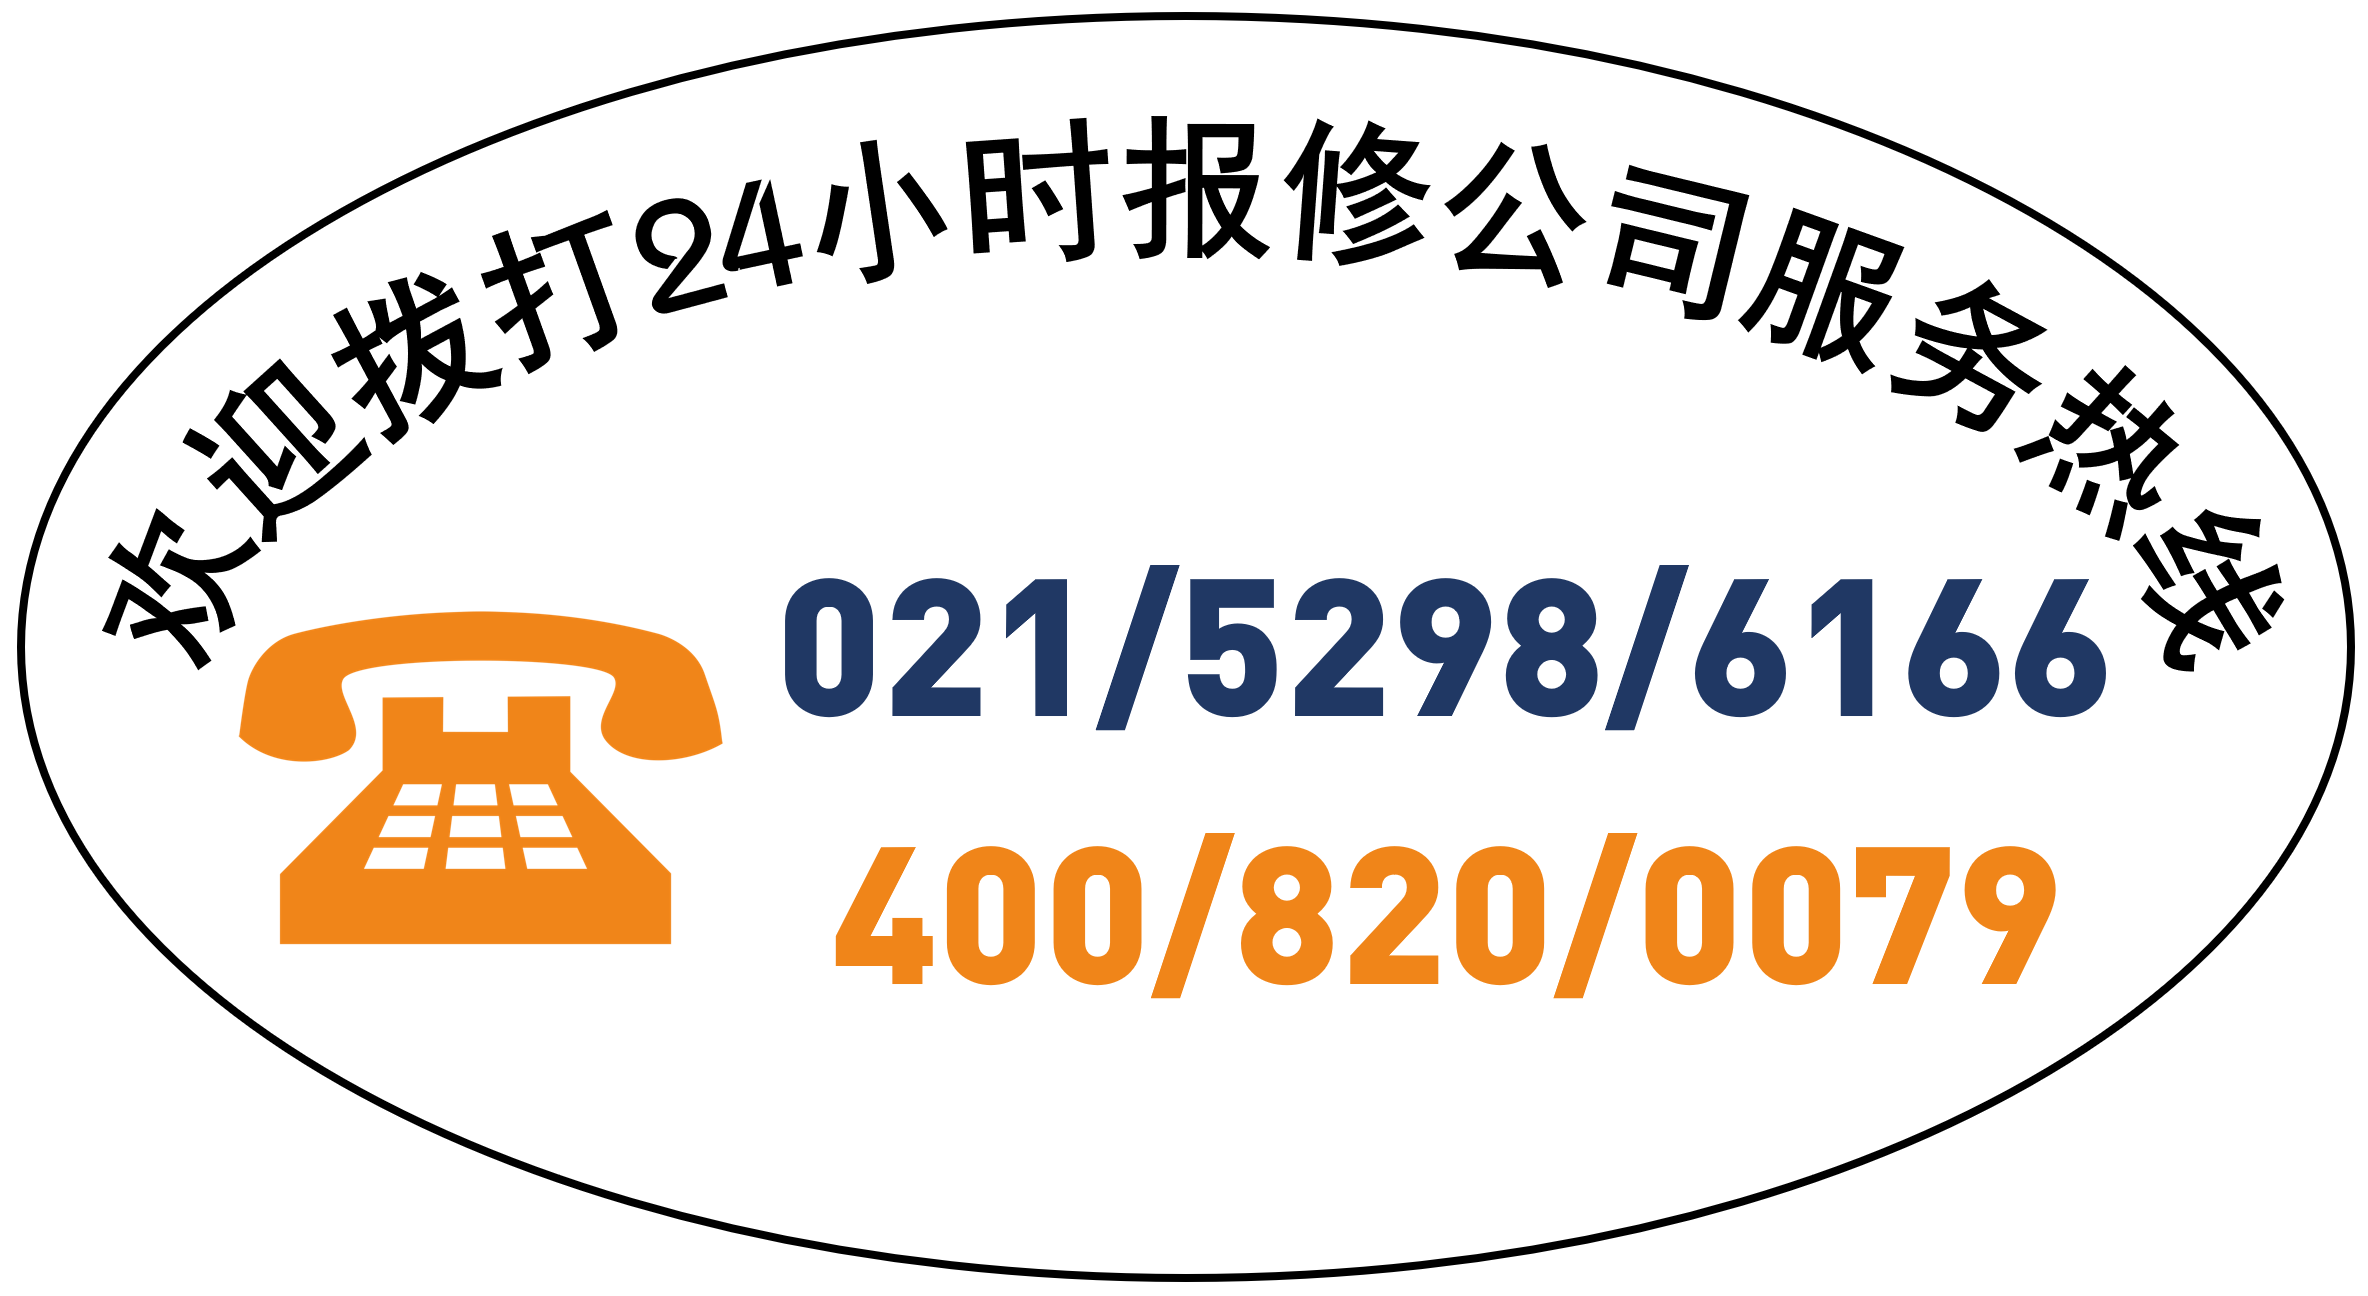 欢迎拨打上海国登展示柜报修电话